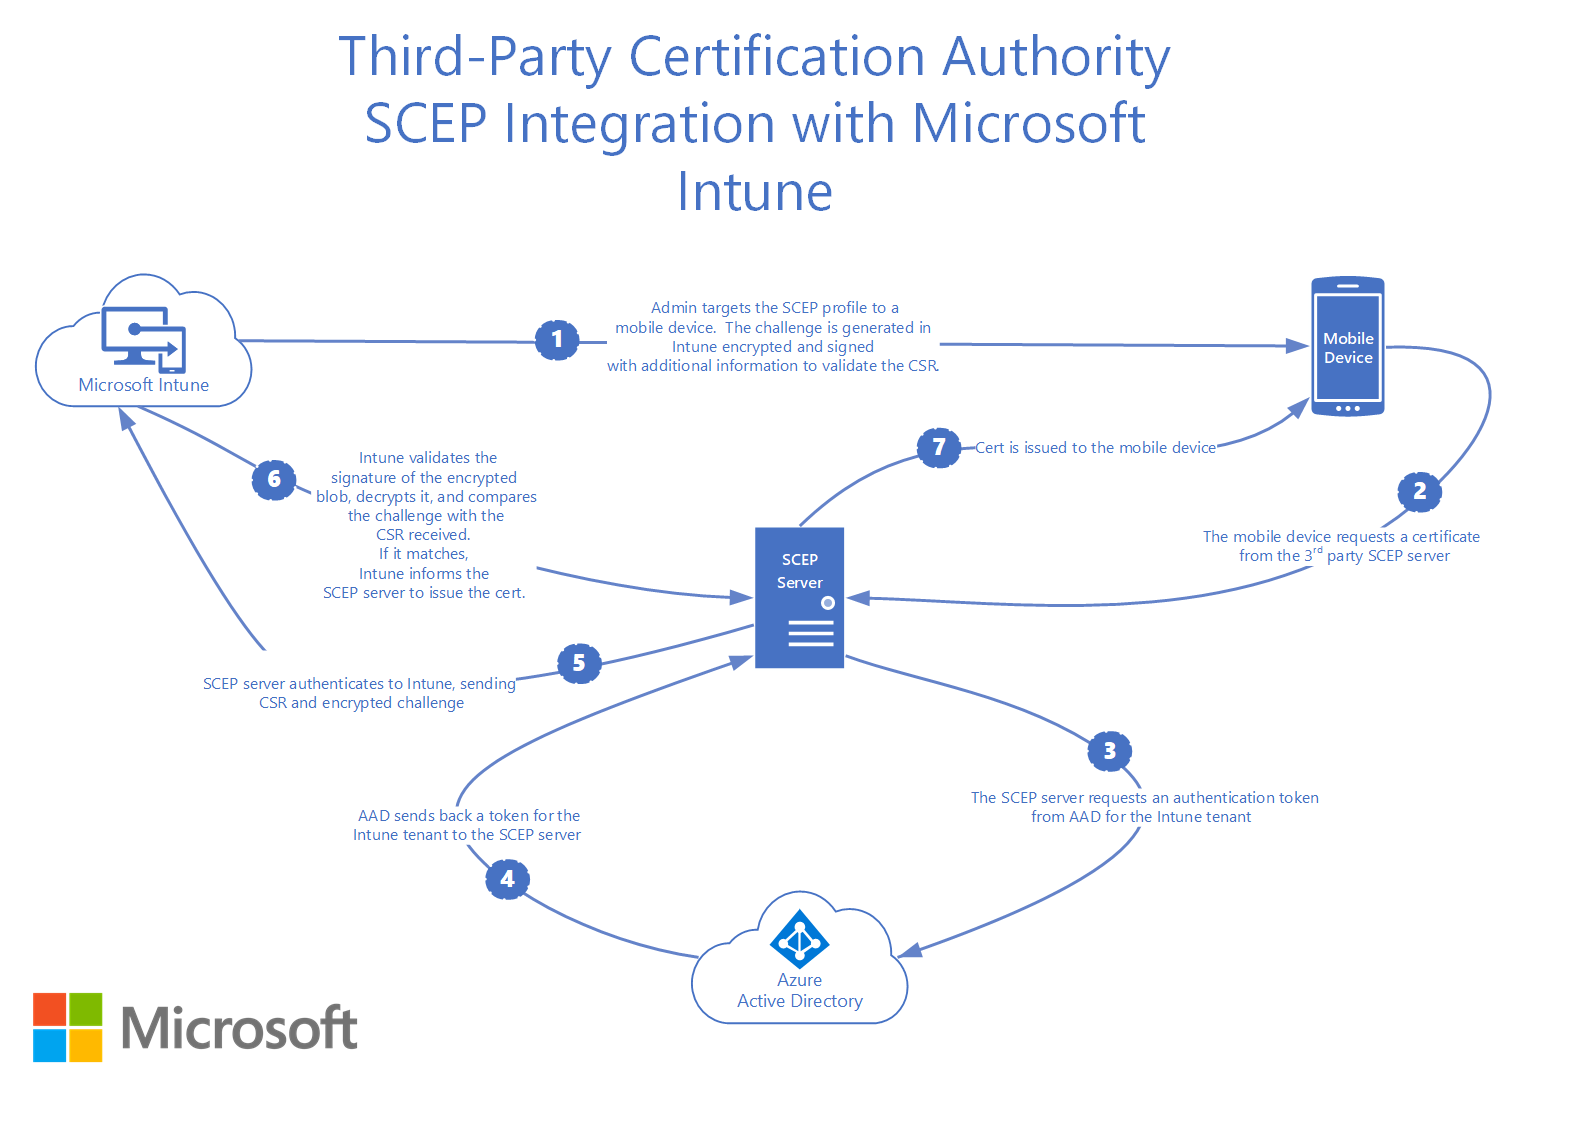 Integrace certifikační autority třetí strany s Microsoft Intune